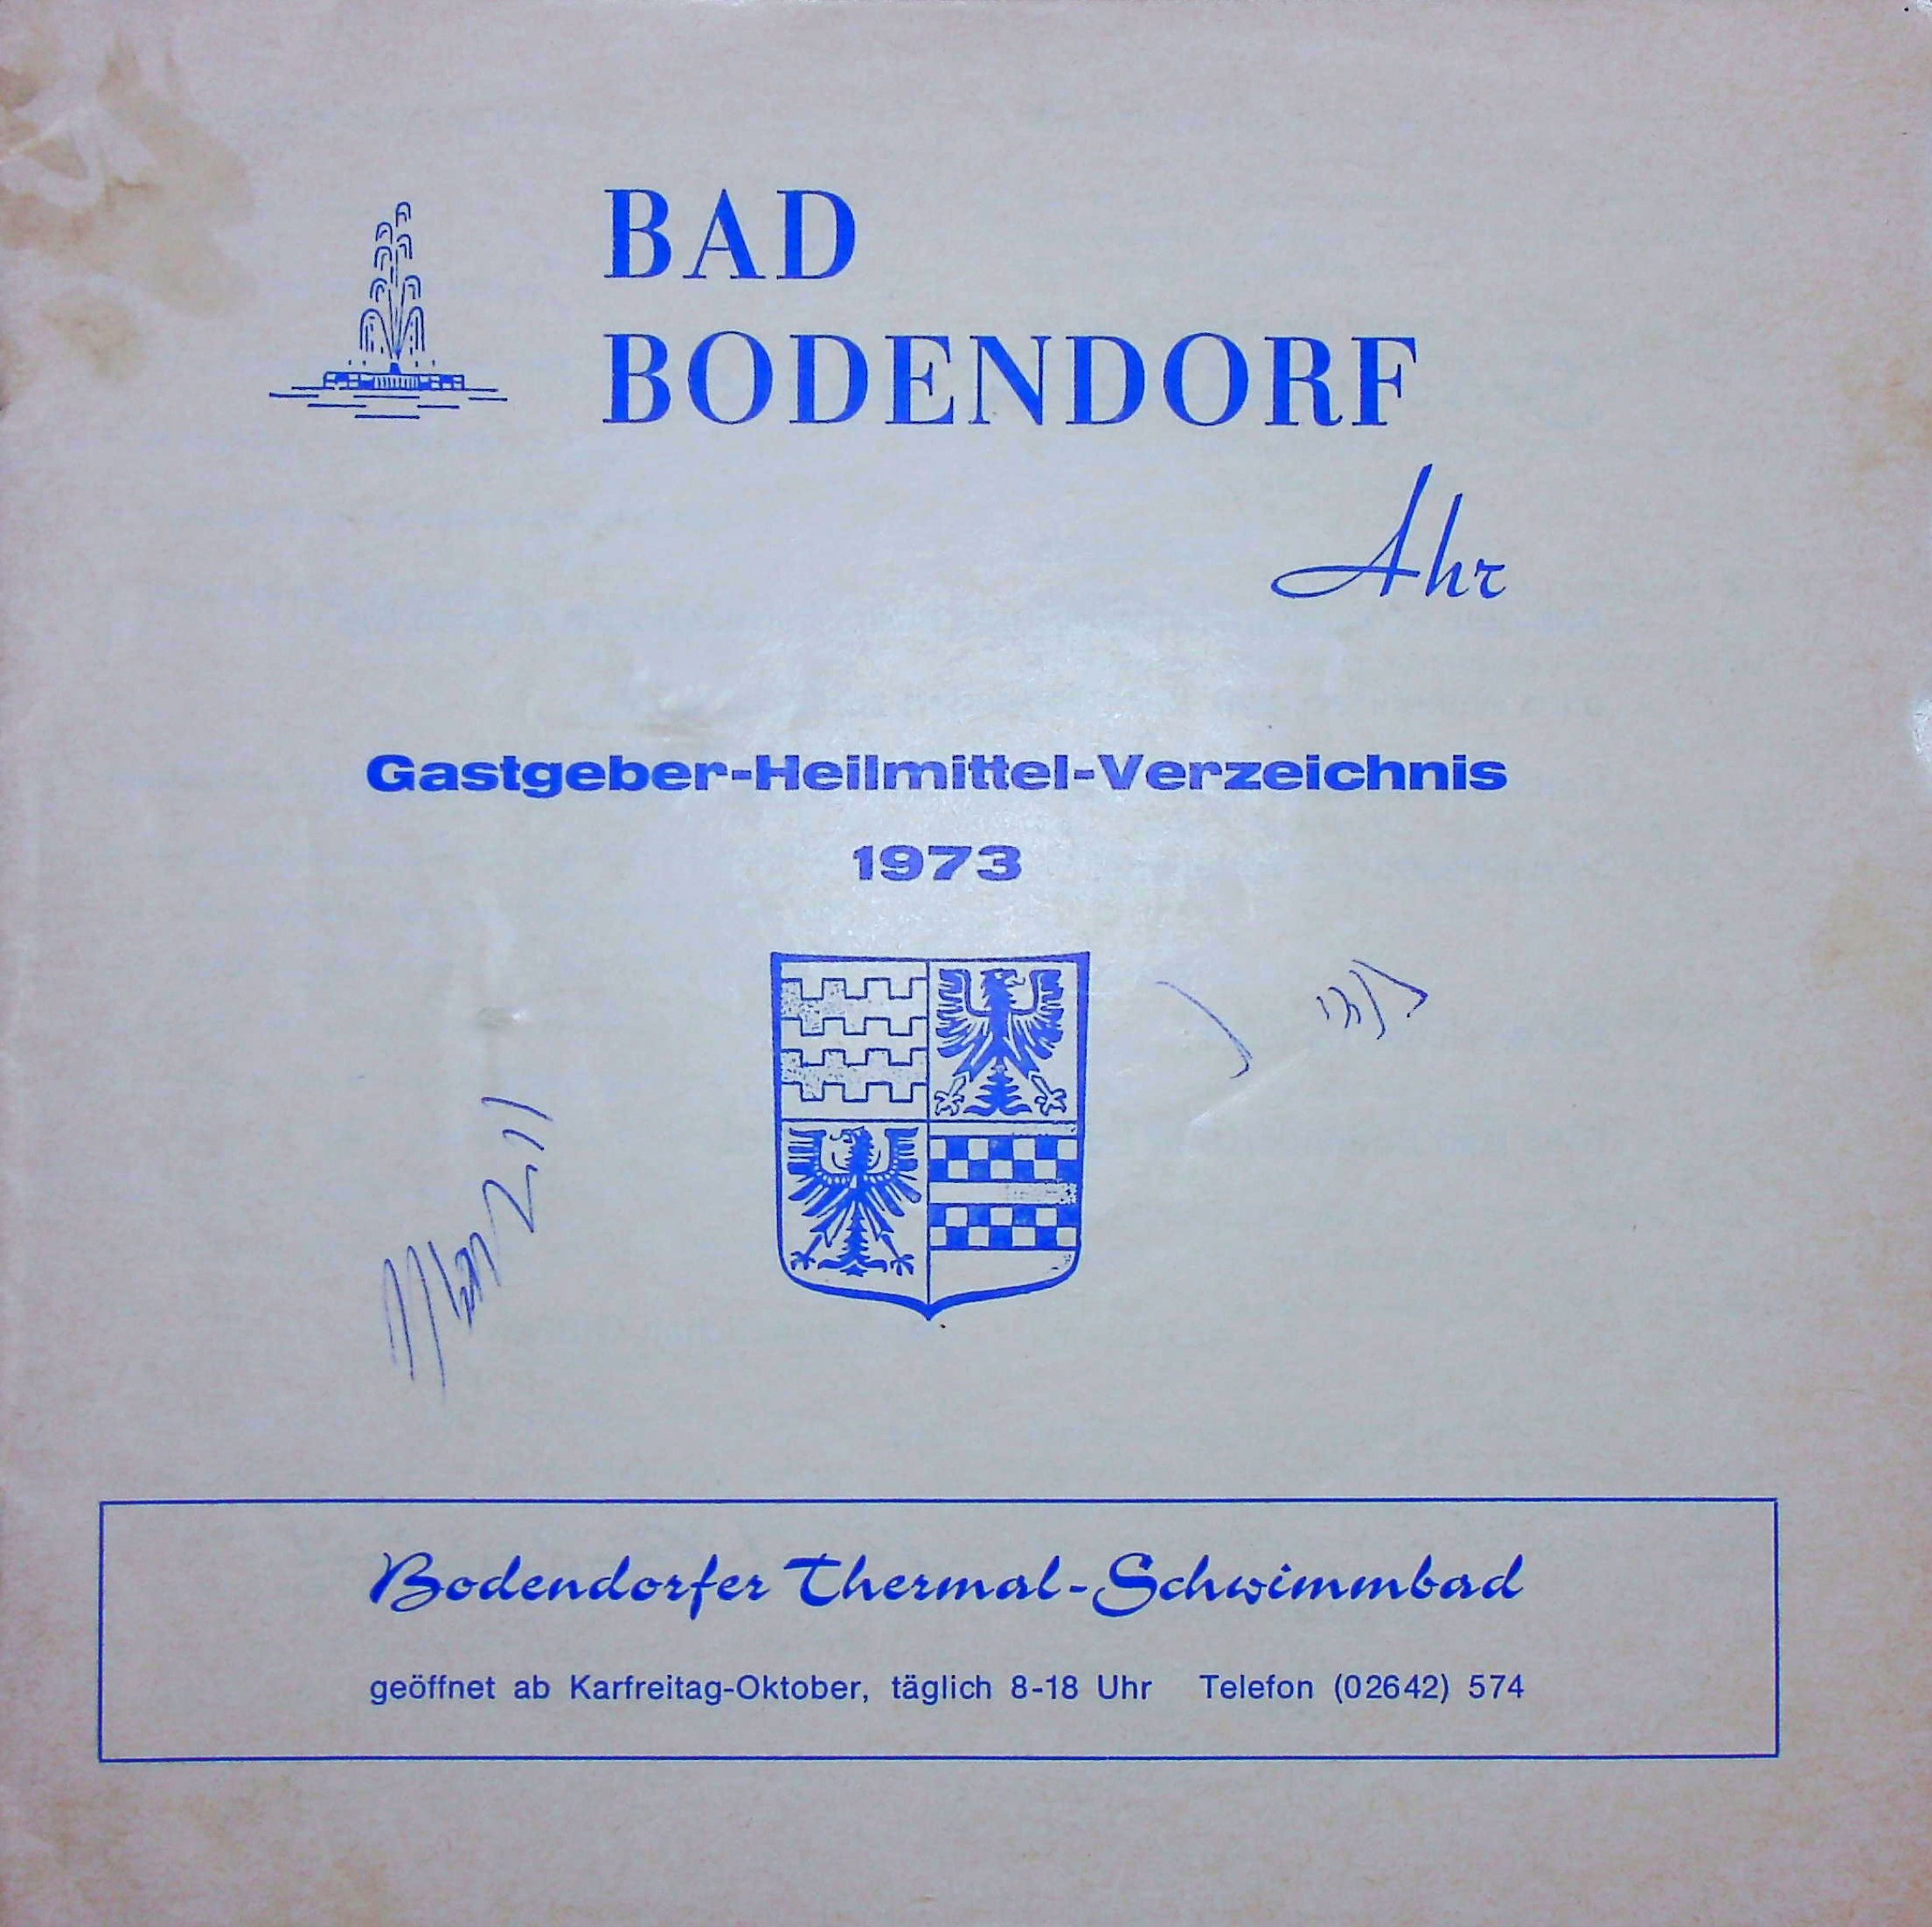 Gastgeber-Heilmittelverzeichnis Bad Bodendorf Ahr 1973 (Heimatarchiv Bad Bodendorf CC BY-NC-SA)